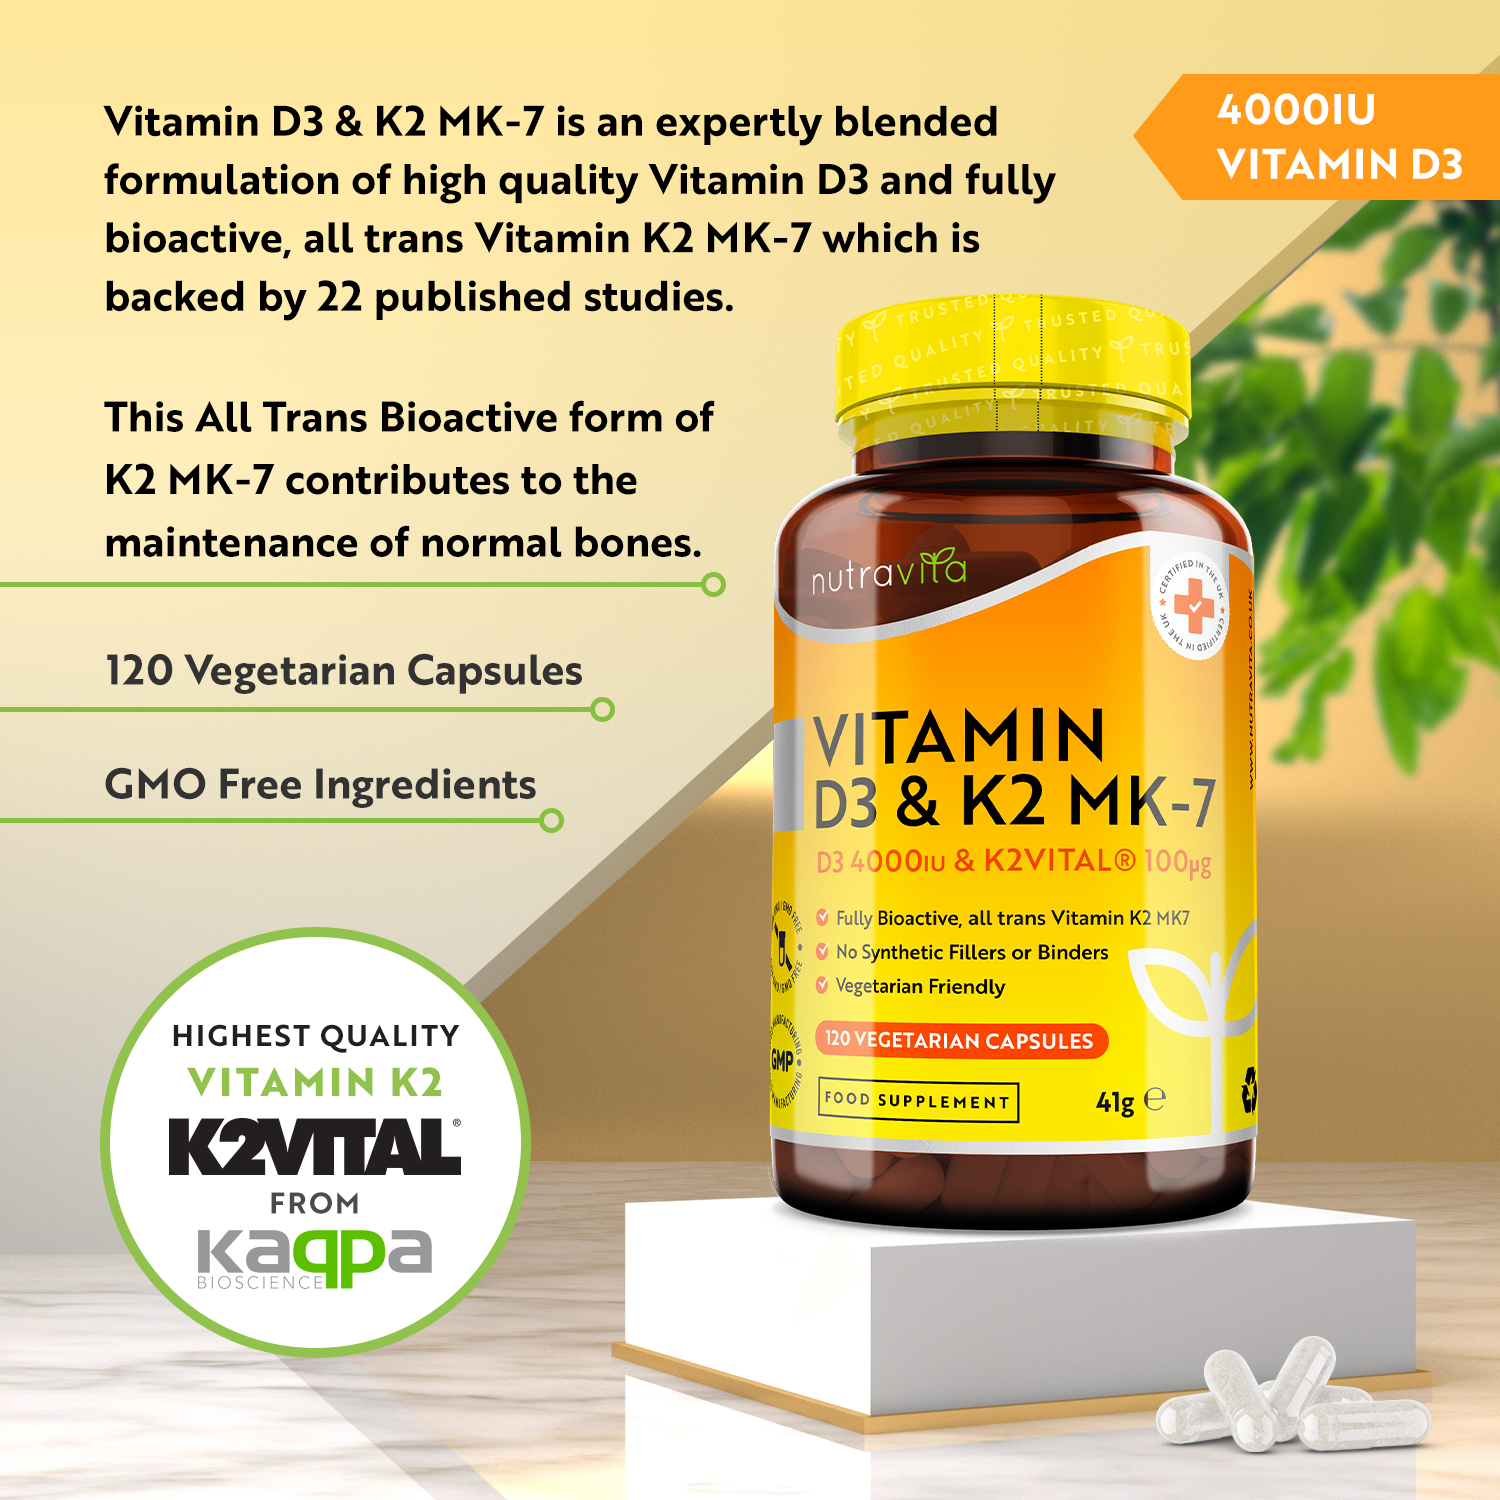 Vitamin D3 4000IU  & Vitamin K2VITAL®️ 100ug 120 Vegetarian Capsules